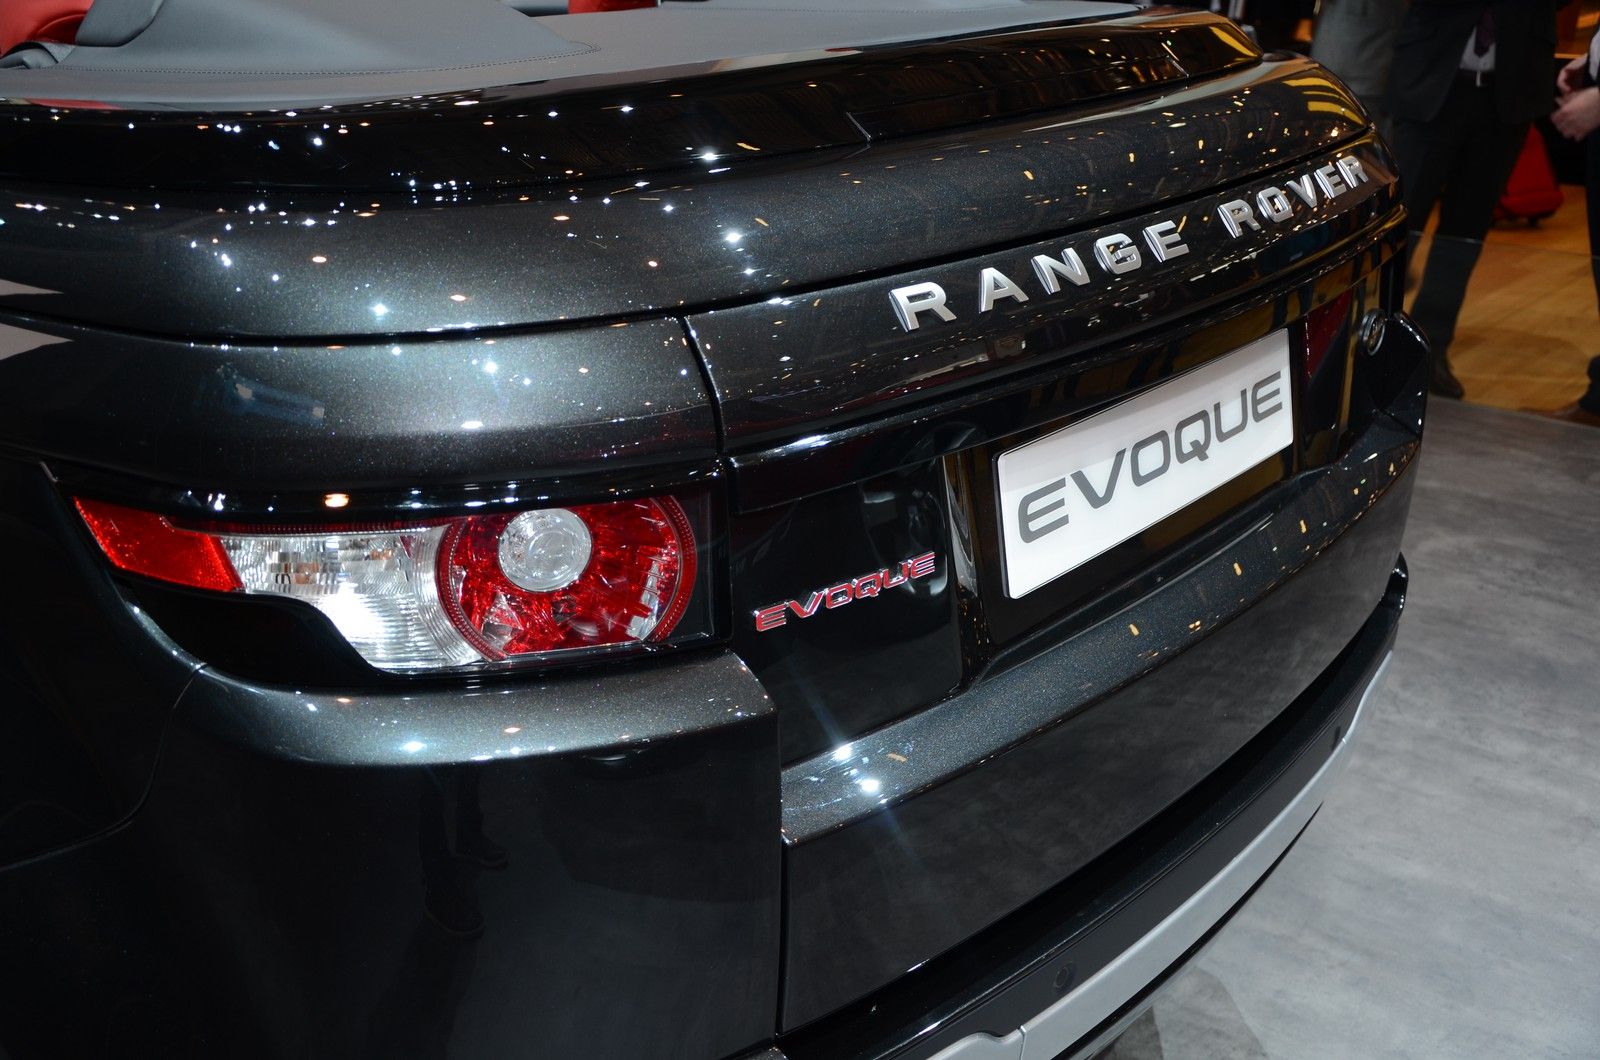 2012 Range Rover Evoque Convertible Concept